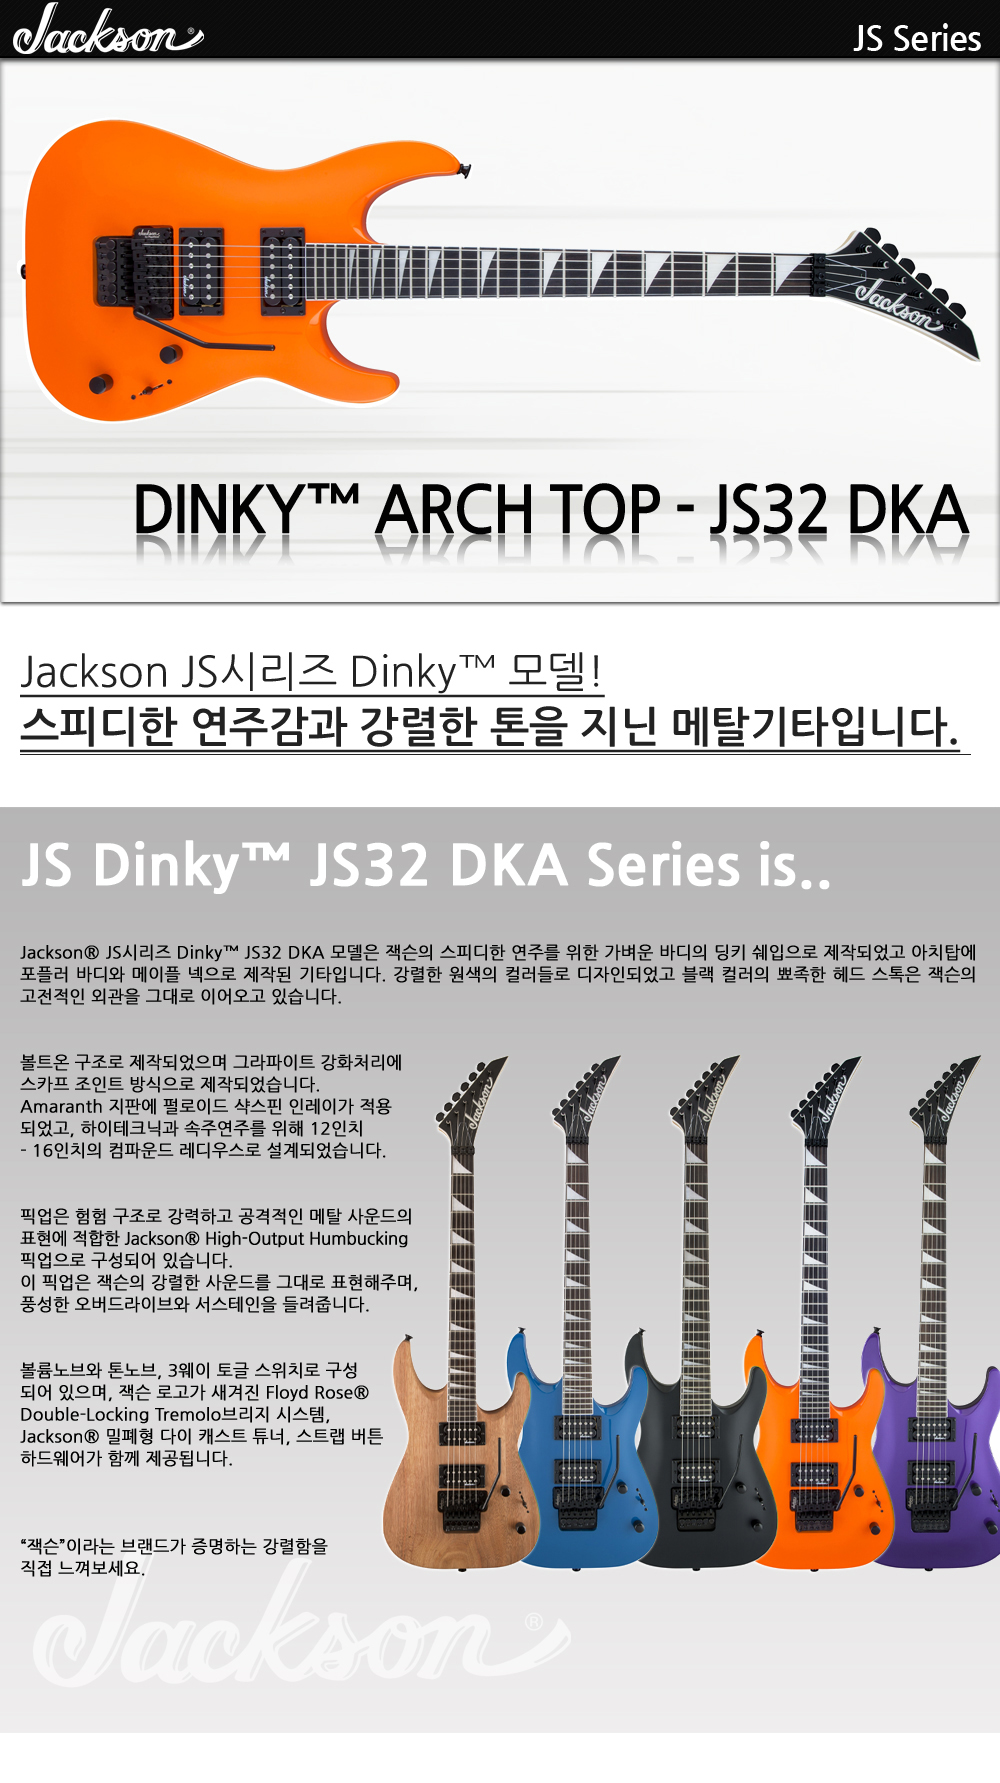 Jackson-JS-Dinky-JS32-DKA-NeonOrange_1_114211.jpg